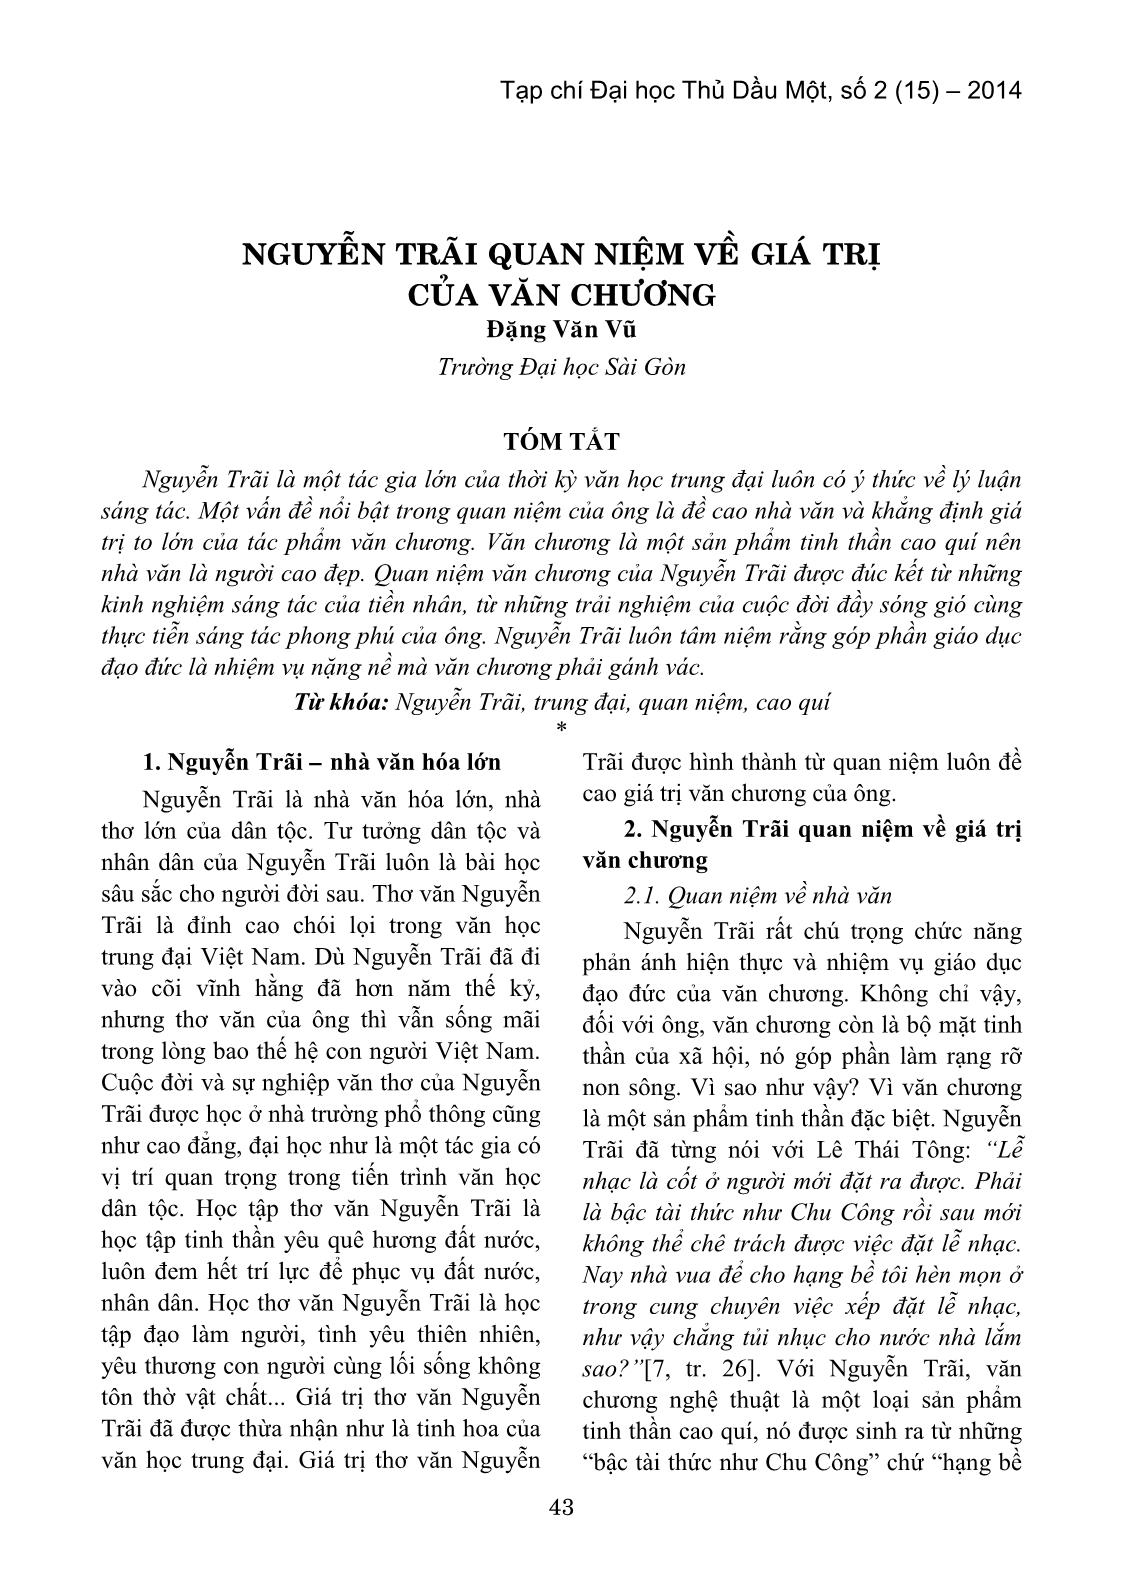 Nguyễn Trãi quan niệm về giá trị của văn chương trang 1